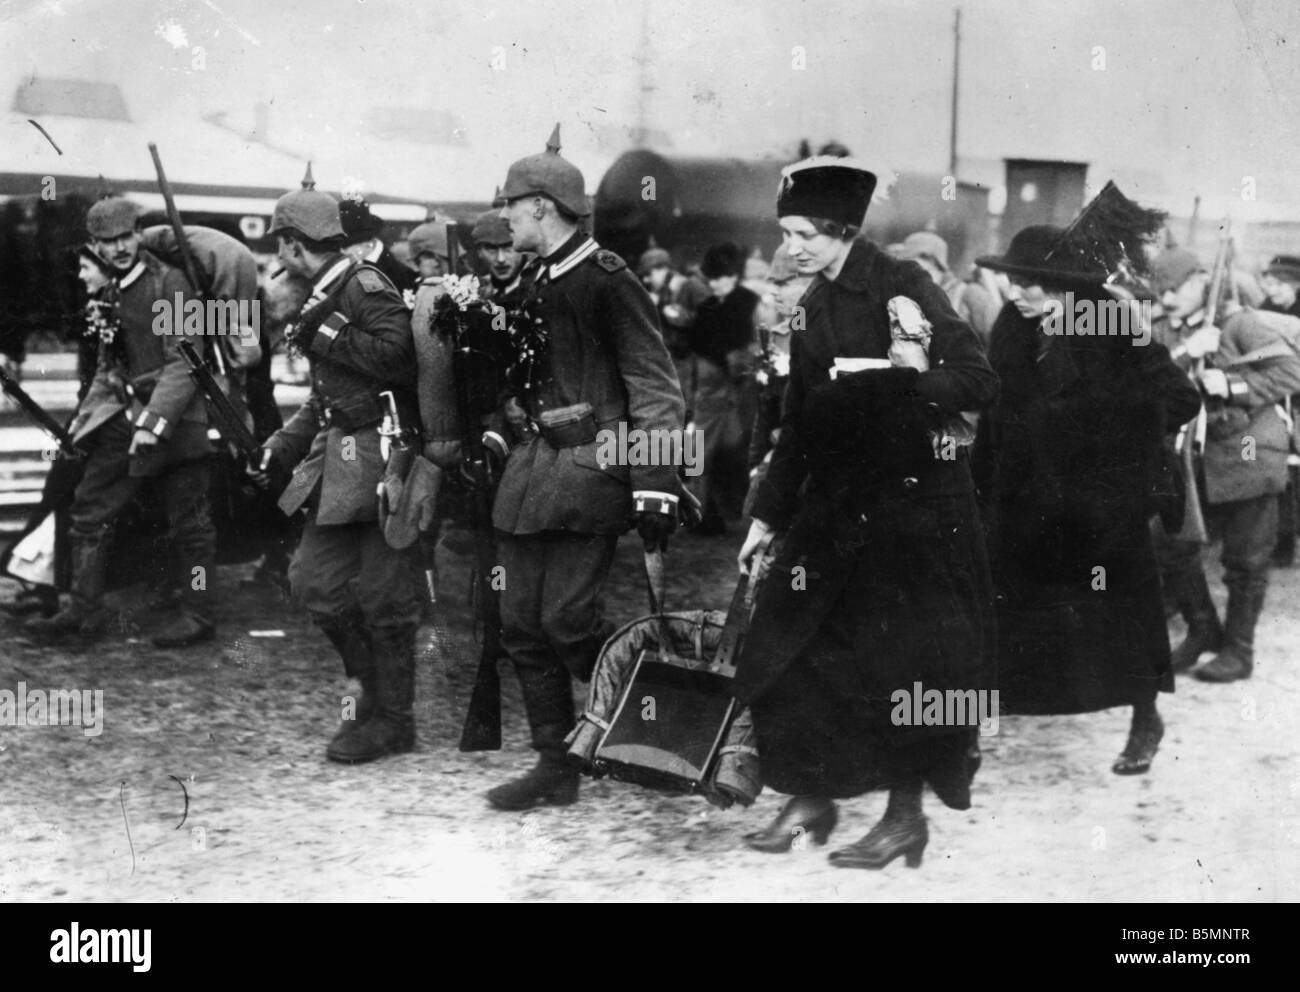 8 1914 0 0 A4 6 épouses et des soldats de la Première Guerre mondiale, 1914 Berlin 1914 Berlin 1918 Une scène à la gare de Berlin accompagne les femmes e Banque D'Images